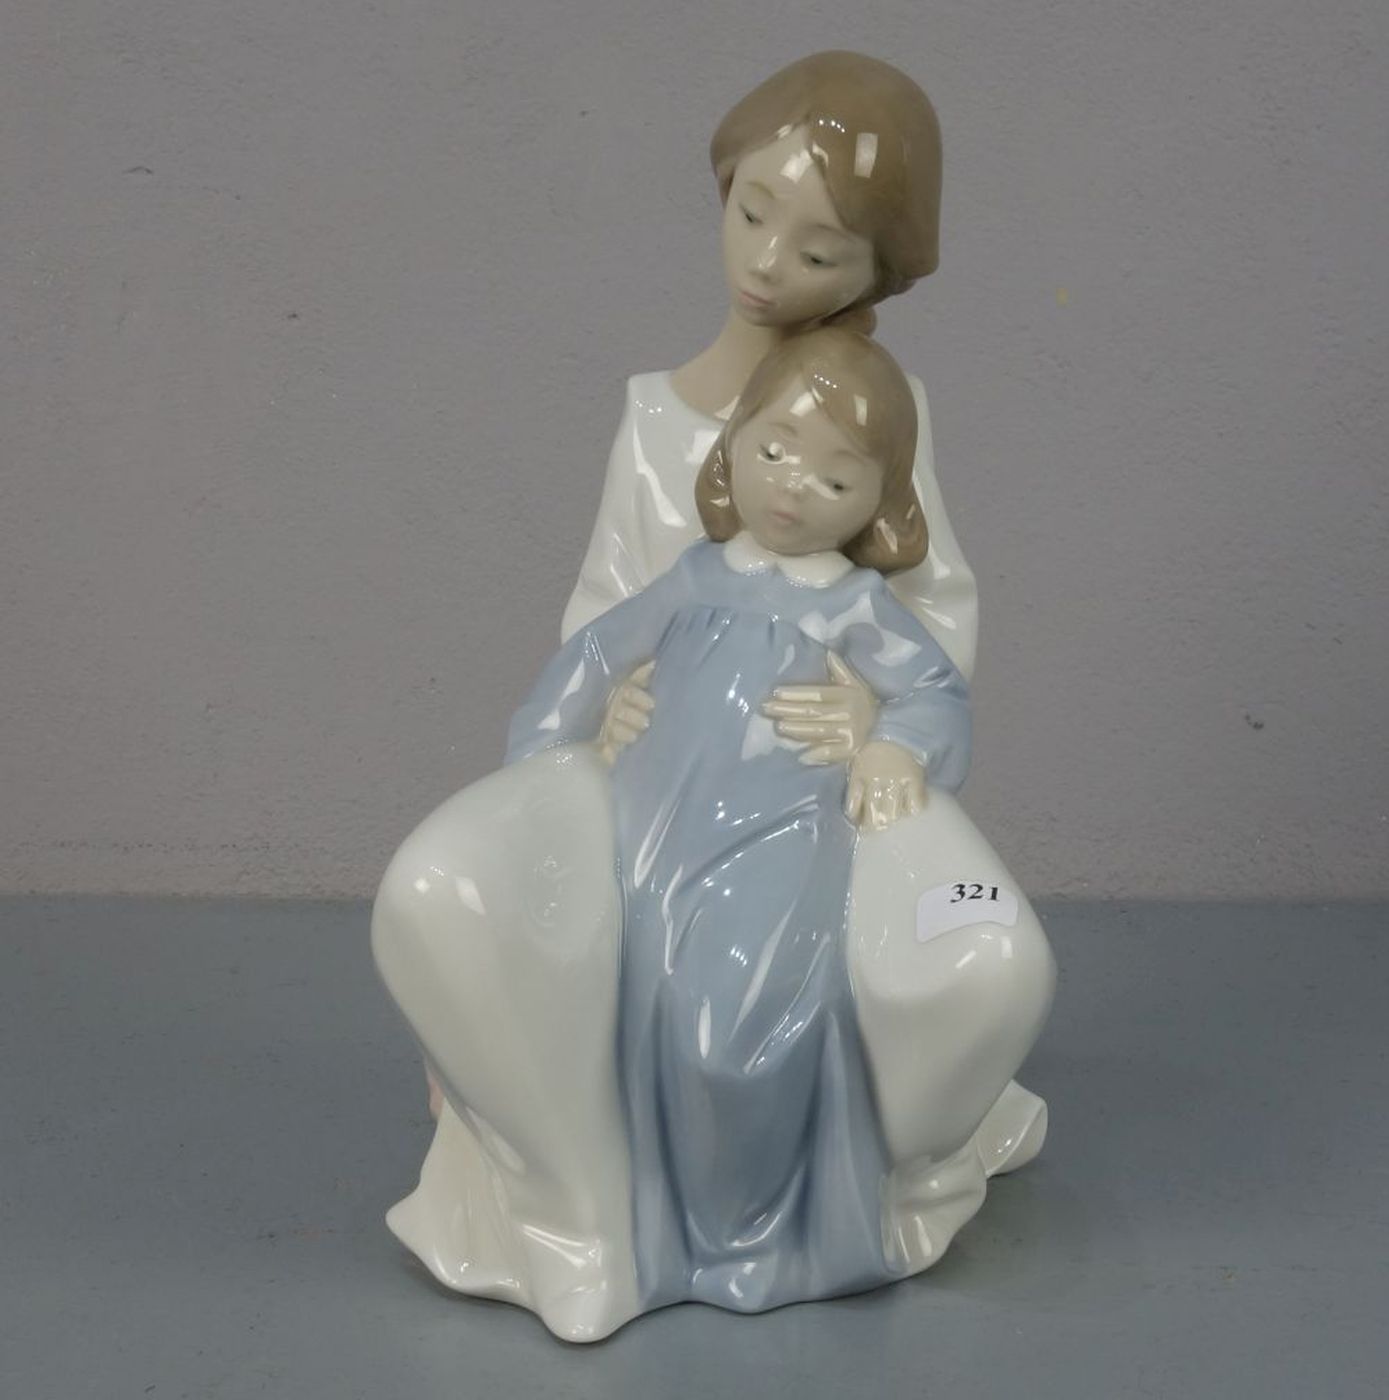 FIGURENGRUPPE: "Mutter und Tochter", Porzellan, Manufaktur Nao, Valencia / Spanien, Marke seit 1968;